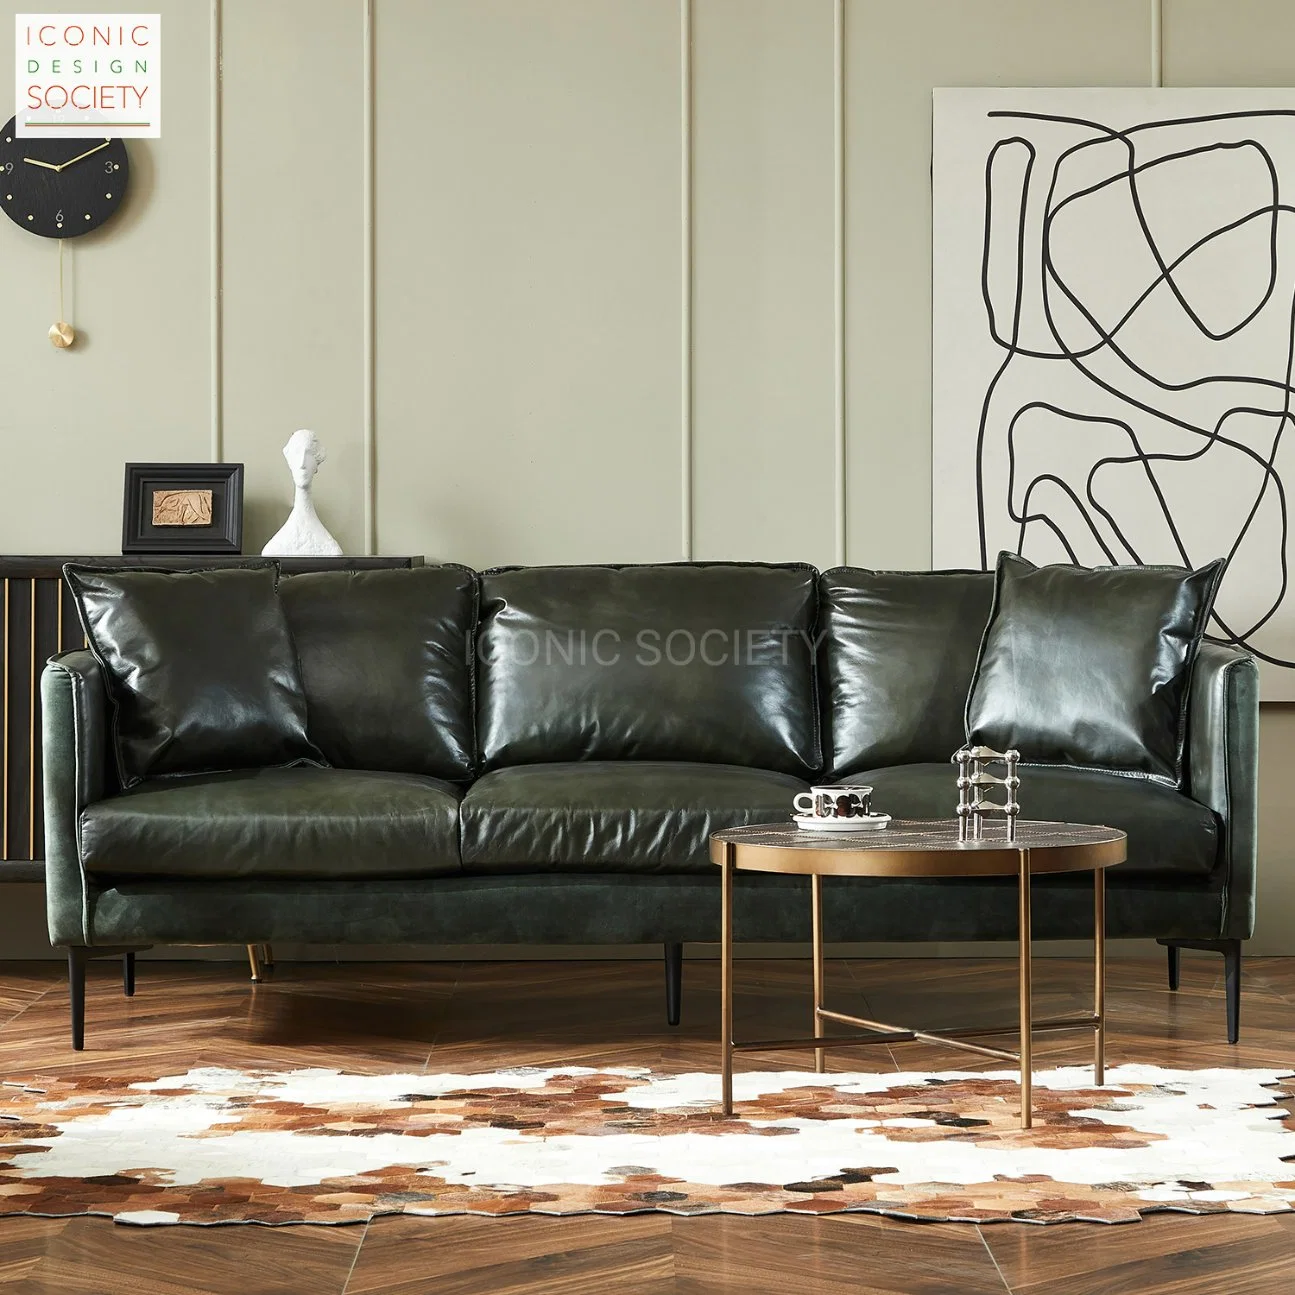 Wohnzimmer Möbel Hotel Holzrahmen Eisen Beine Freizeit Couch Sets Samt Stoff Echtes Leder Sofa-Set Home Möbel